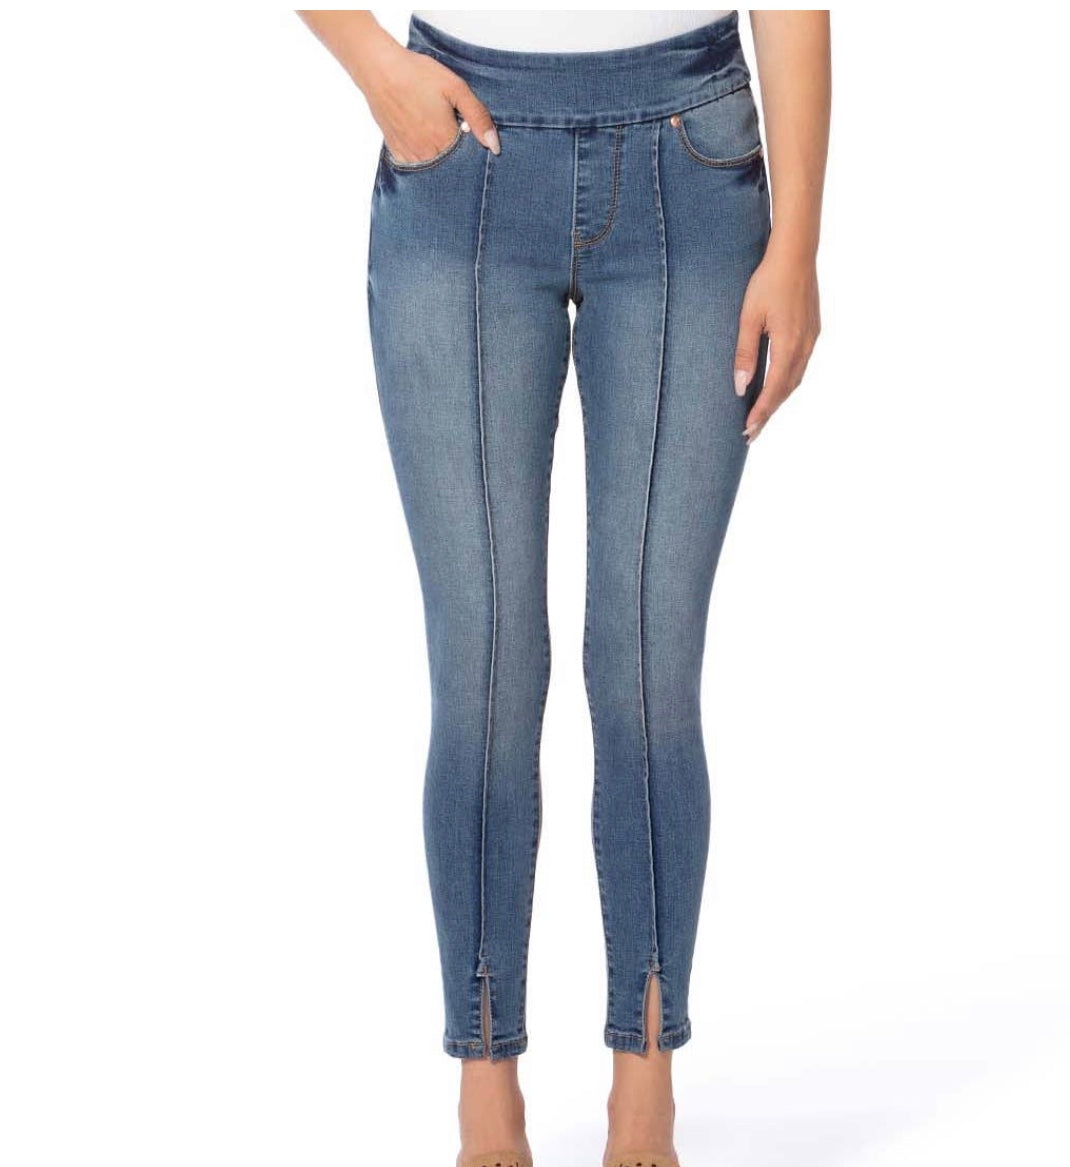 Mila Jeans by Lola